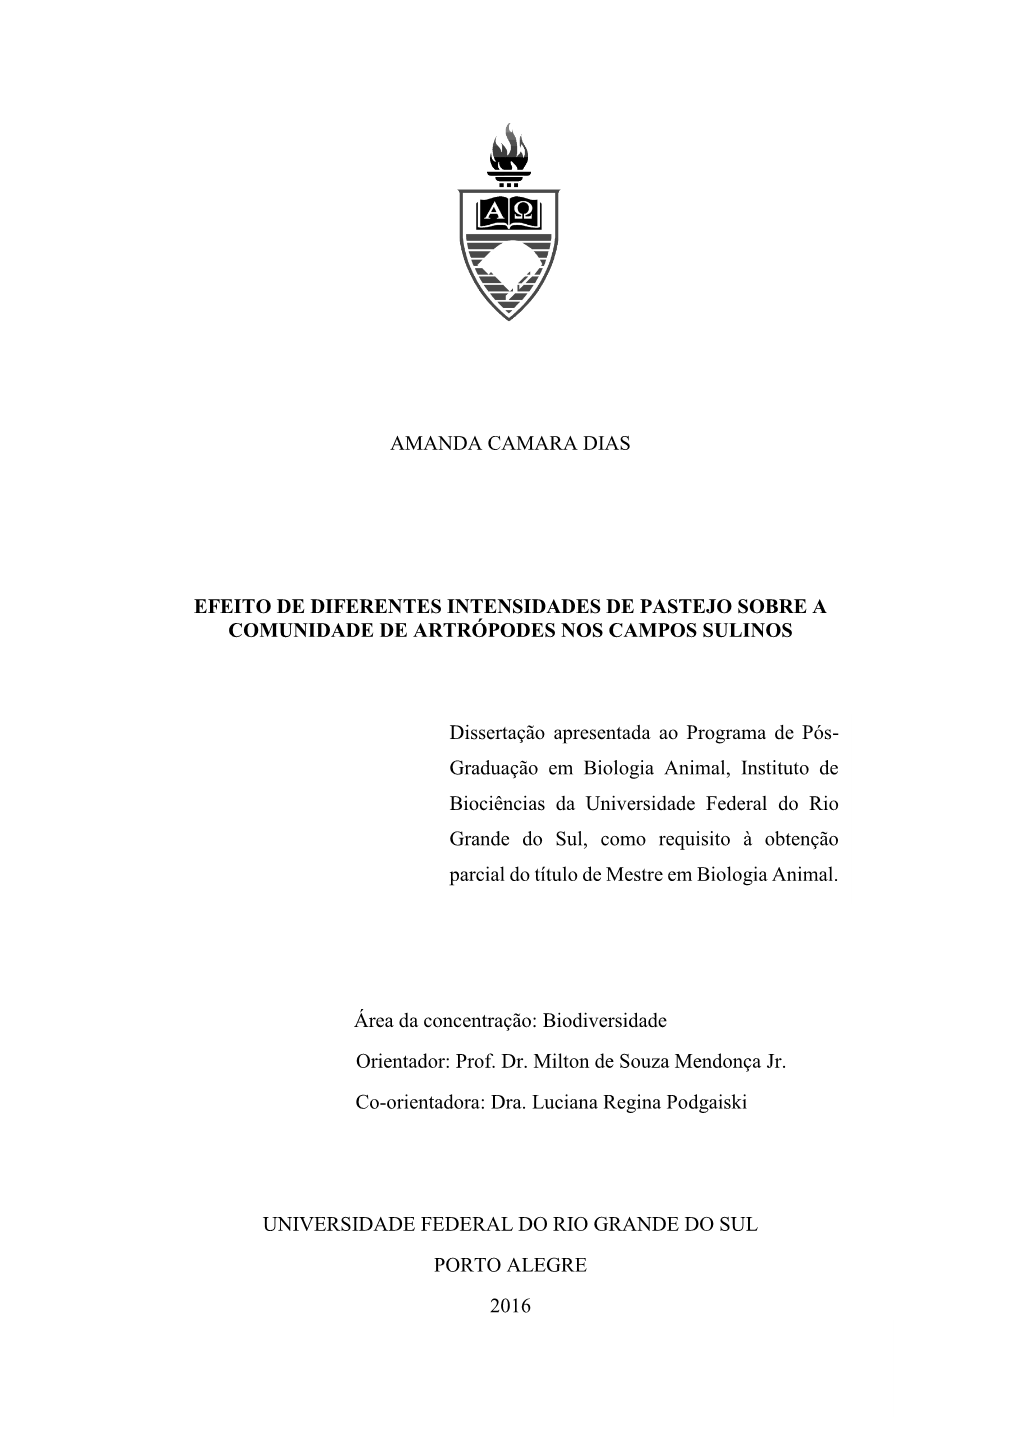 Dissertação Apresentada Ao Programa De Pós- Graduação Em Biologia Animal, Instituto De Biociências Da Universidade Federal Do Rio